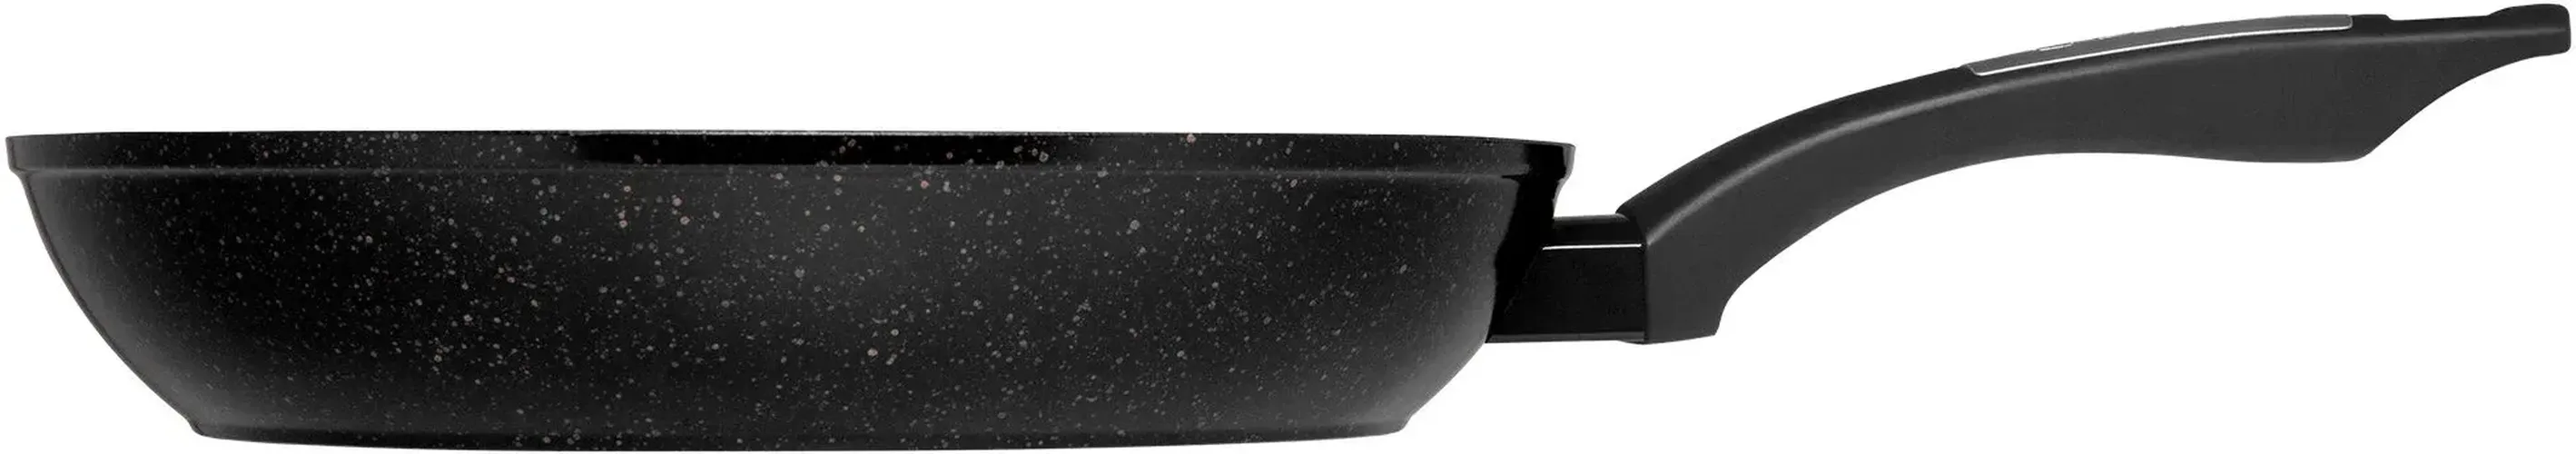 Сковорода Polaris Monolit-28F, 28 см, Черный, купить недорого